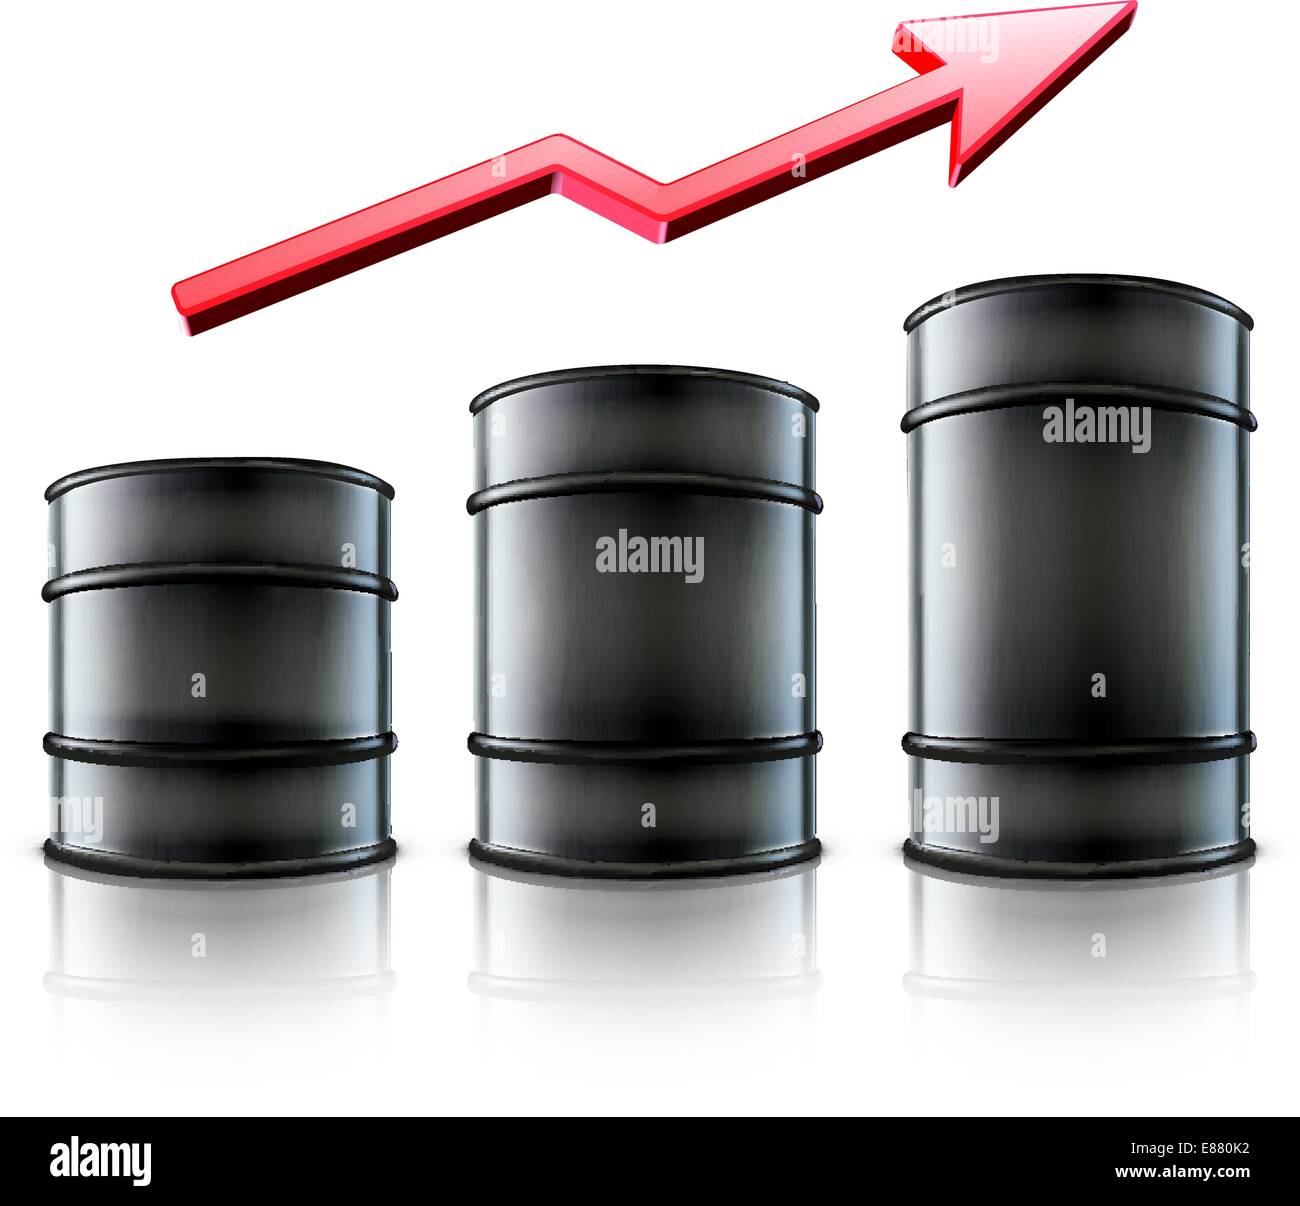 Illustrazione vettoriale delle tre in metallo nero barili di olio con una freccia rossa che mostra un aumento del consumo di benzina o di origine in un costo di olio Illustrazione Vettoriale